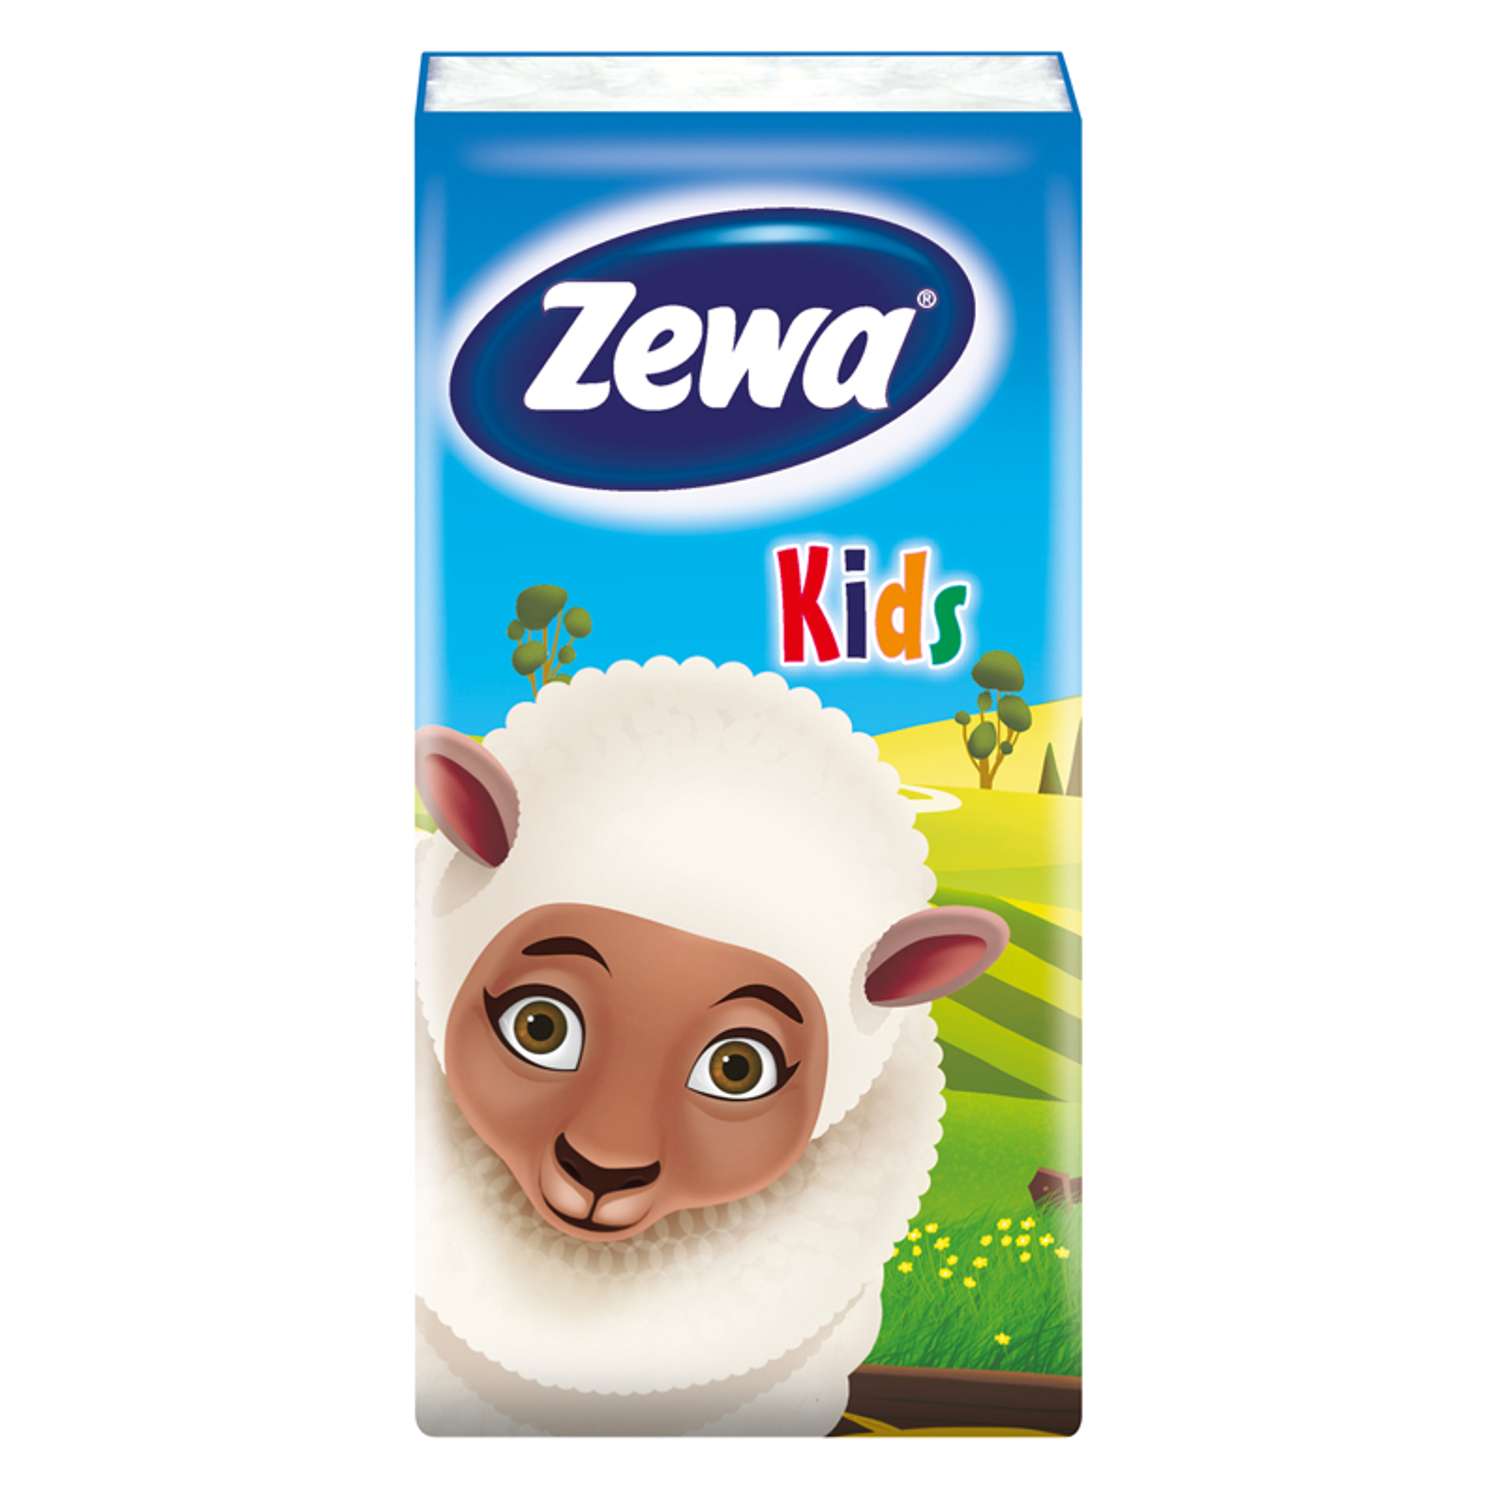 Платки носовые Zewa Kids 3 слоя 10шт в ассортименте 51122 - фото 5